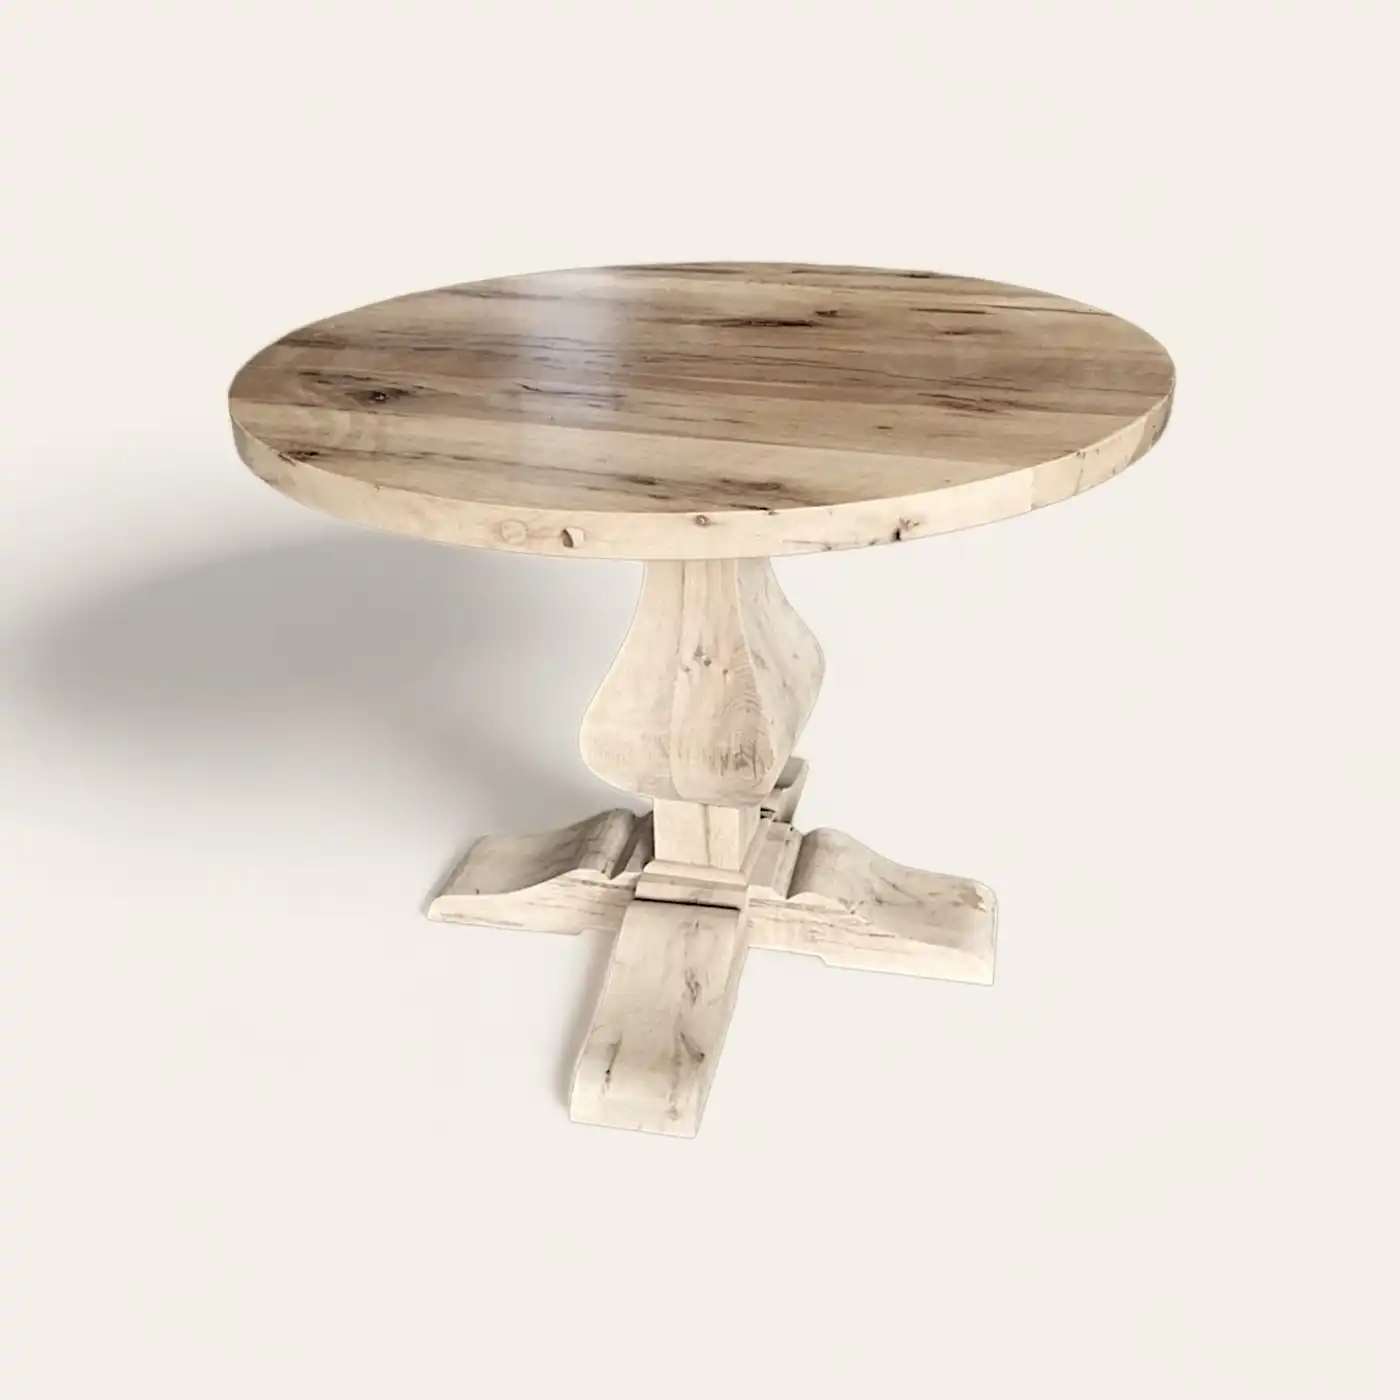  Une table rustique ronde en bois avec un piètement en bois. 